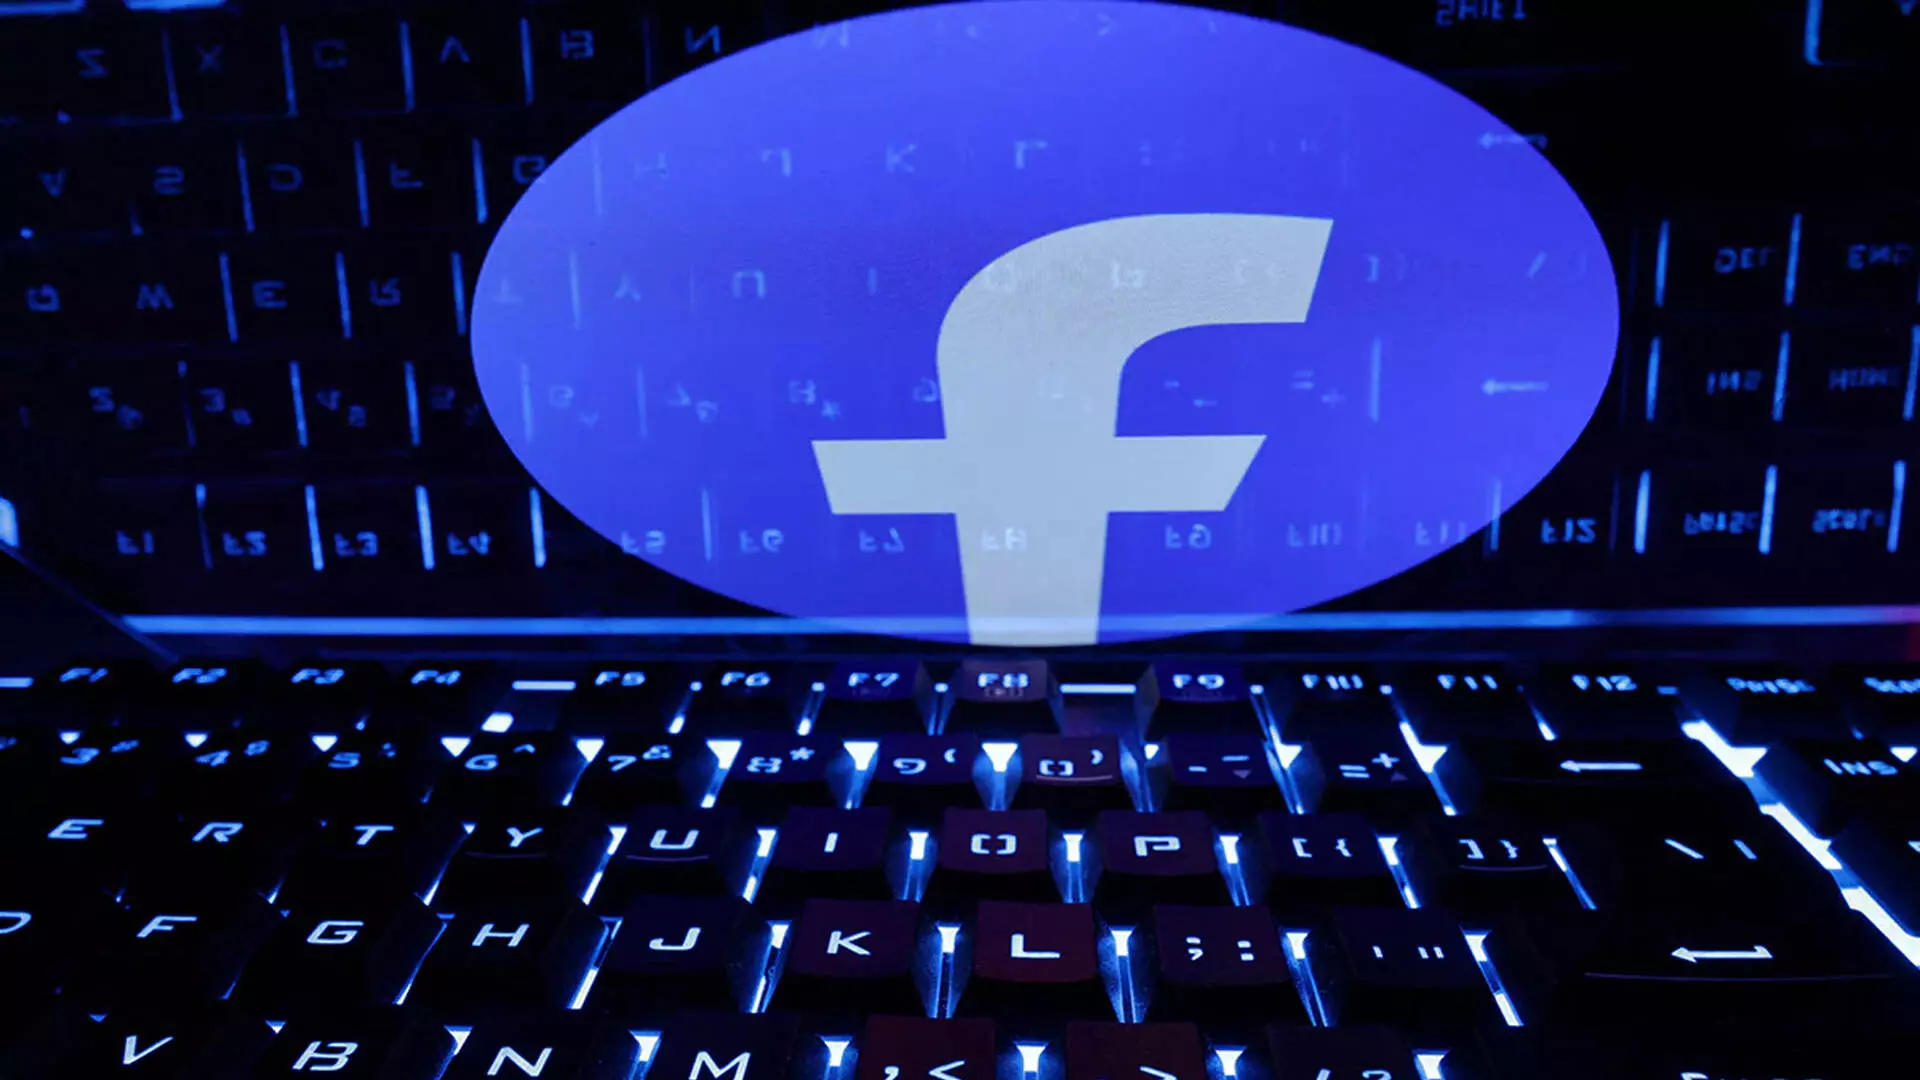 फेसबुक, इंस्टाग्राम के लिए शहीद एक मुद्दा क्यों? मेटा ने किया प्रतिबंध हटाने का आग्रह